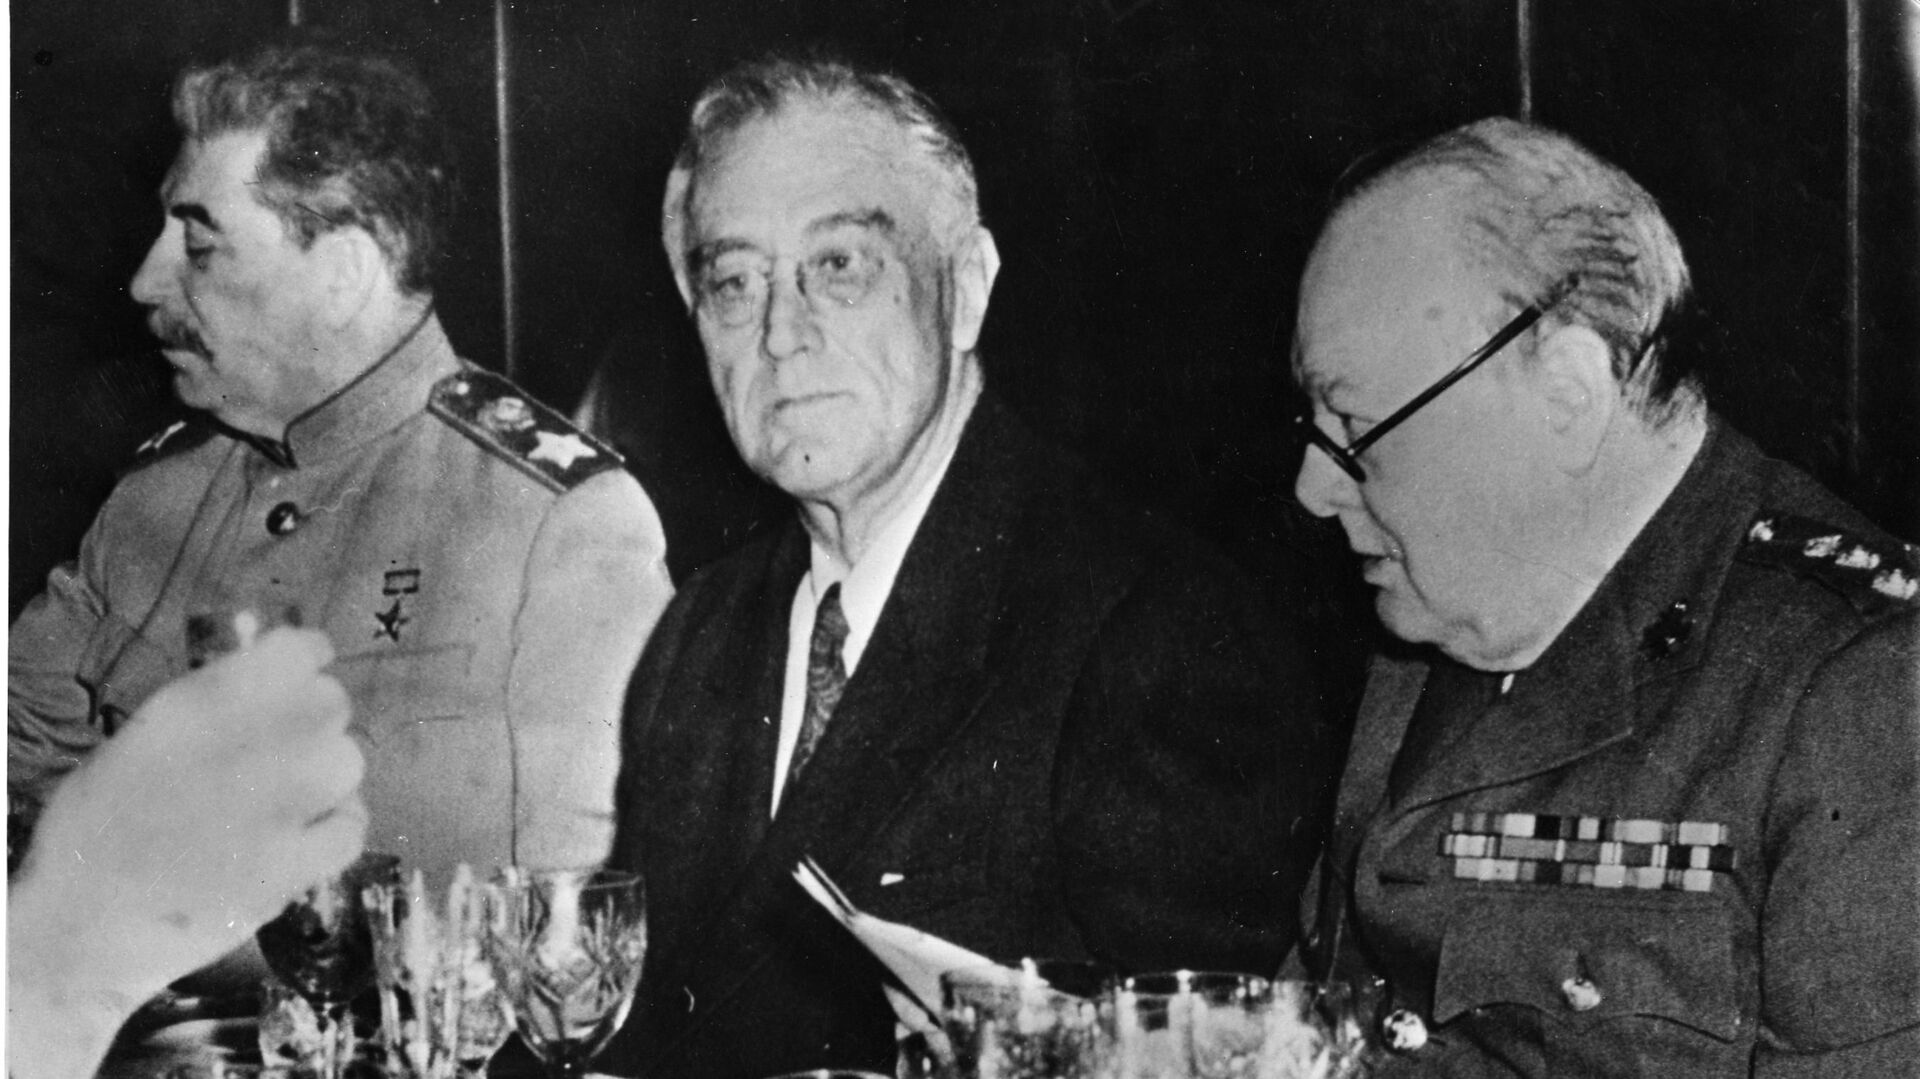 Иосиф Сталин, Франклин Рузвельт и Уинстон Черчилль во время финального ужина в Ялте. 11 февраля 1945  - РИА Новости, 1920, 17.12.2020